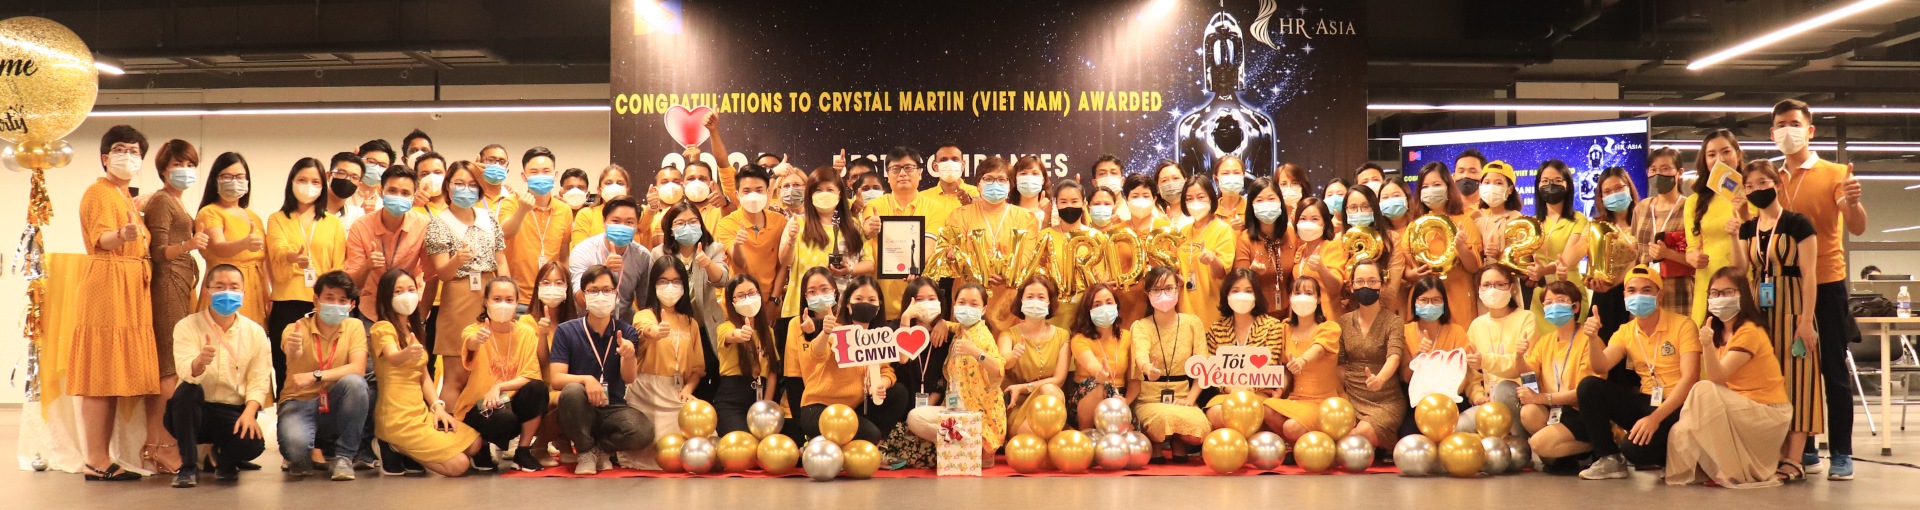 
                                                            Open jobs at Công ty TNHH Crystal Martin (Việt Nam)
                                                    